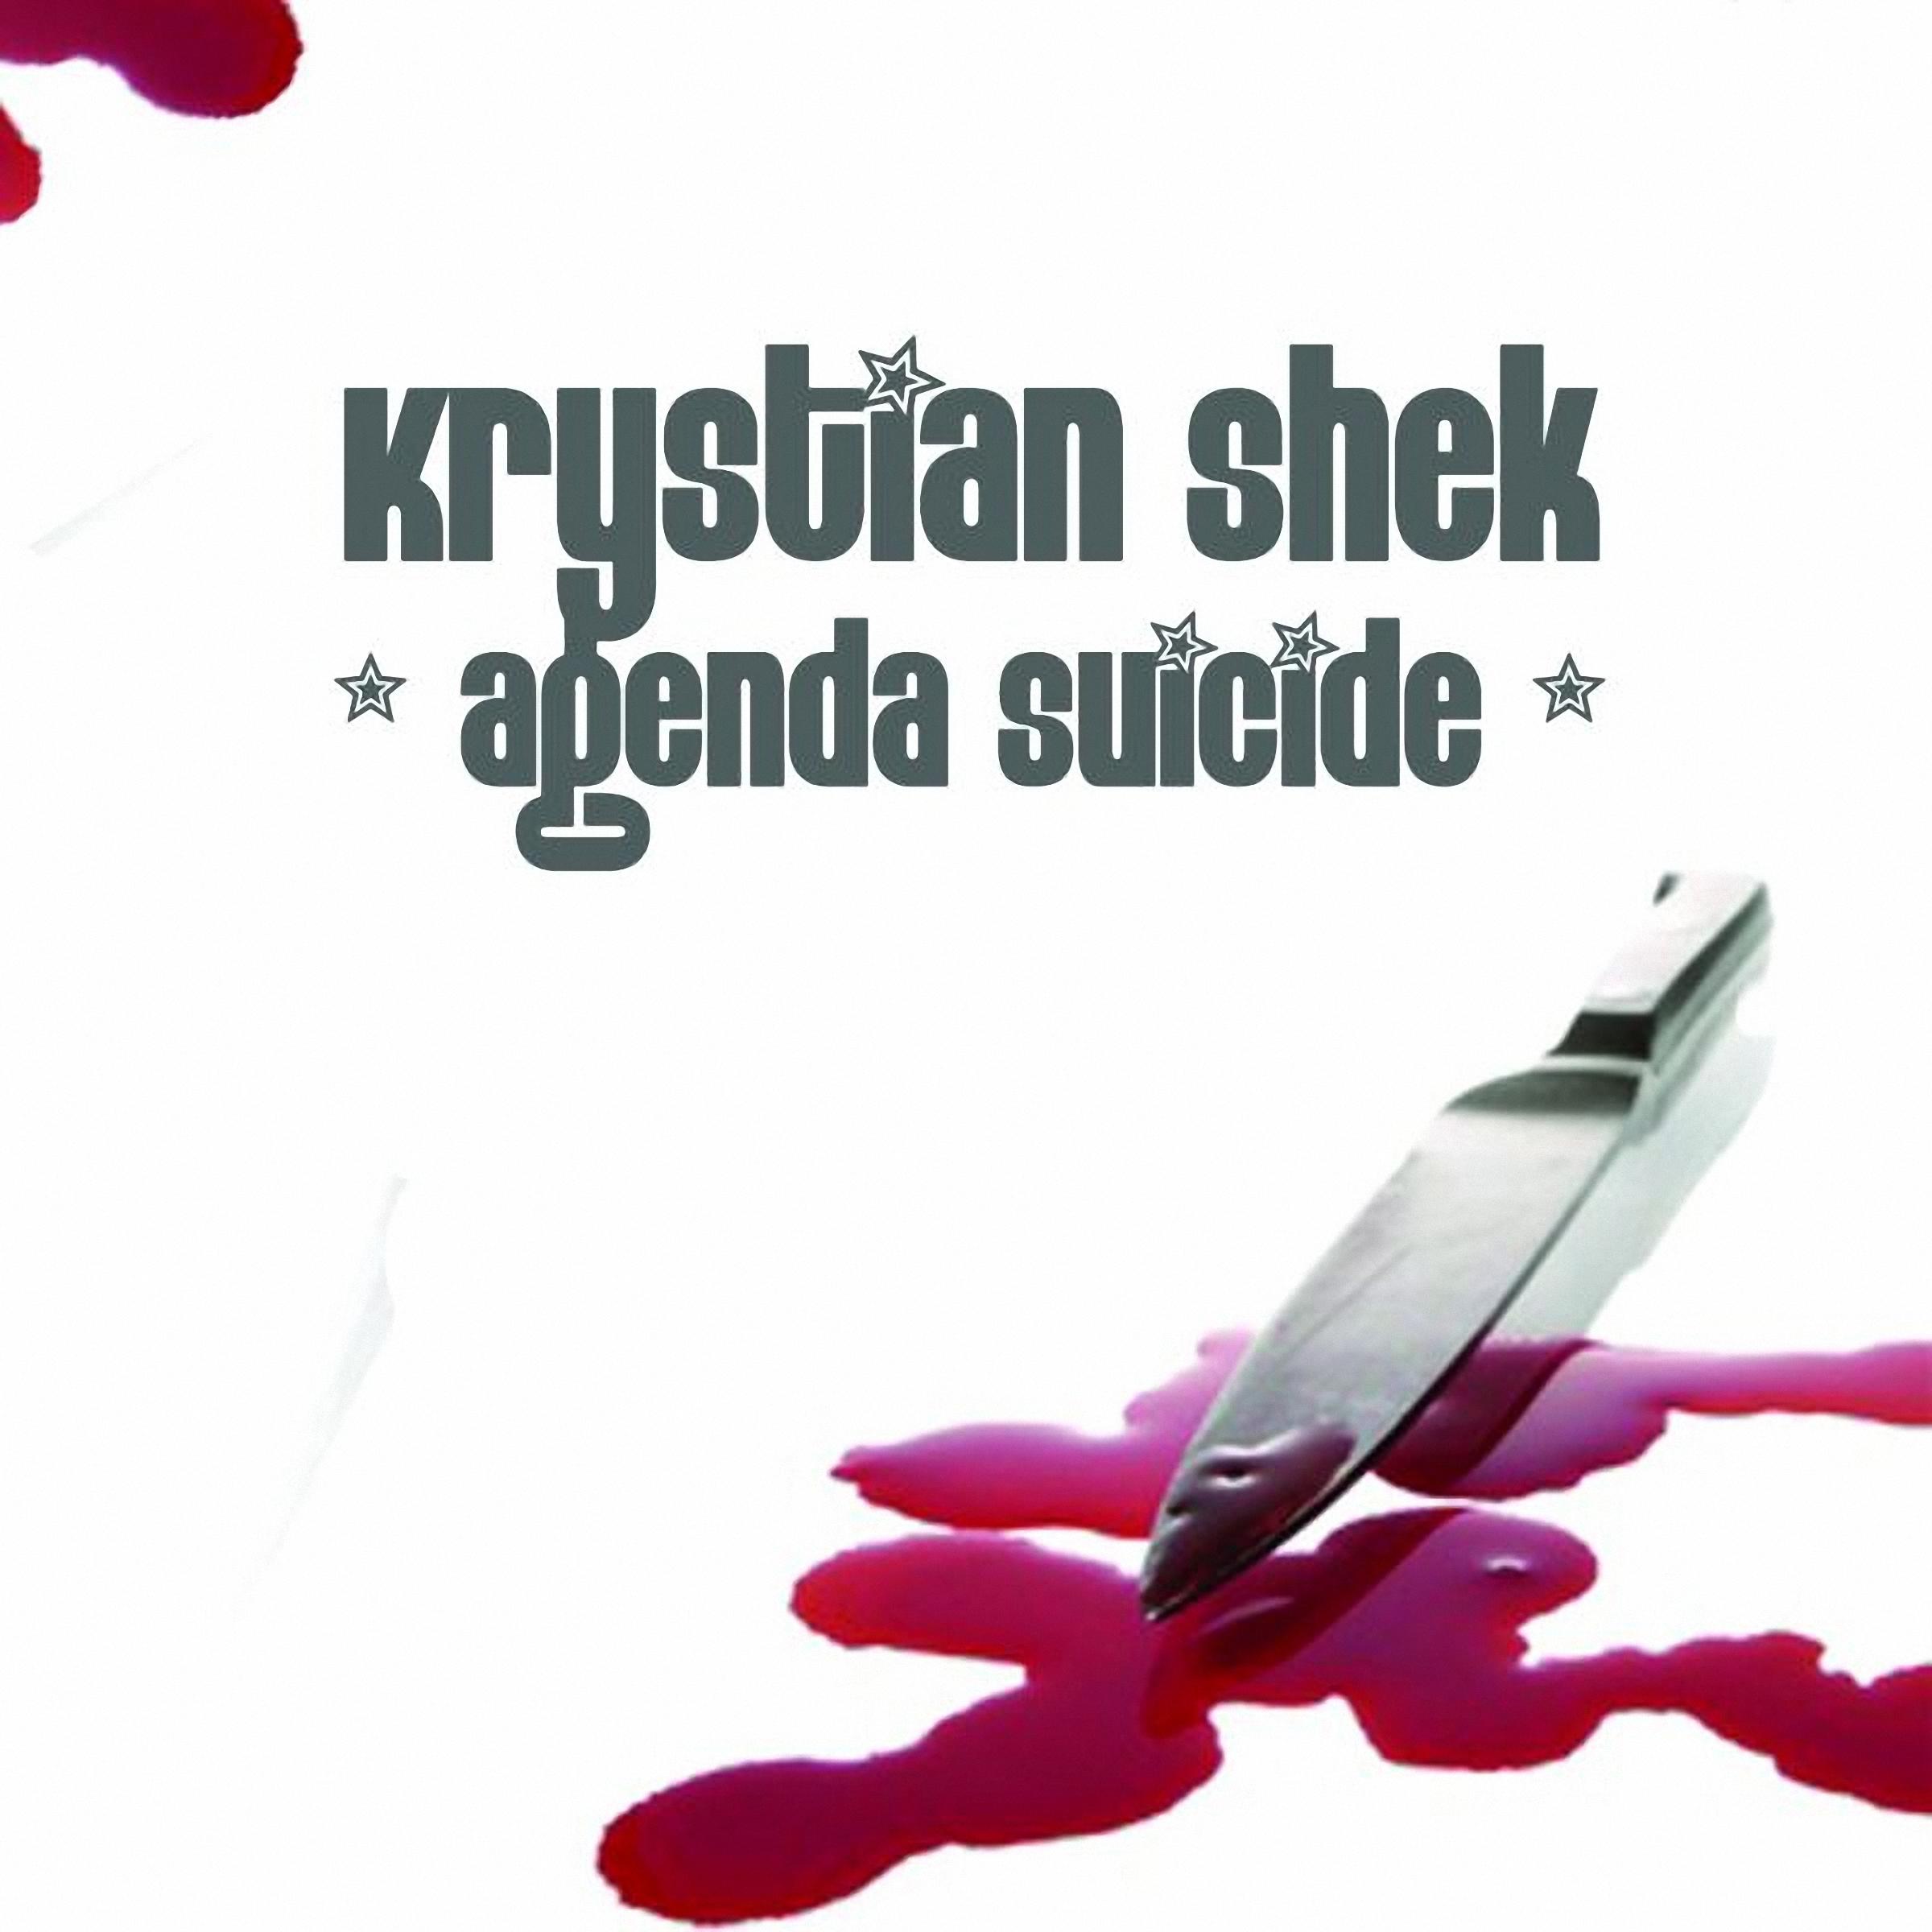 Agenda Suicide